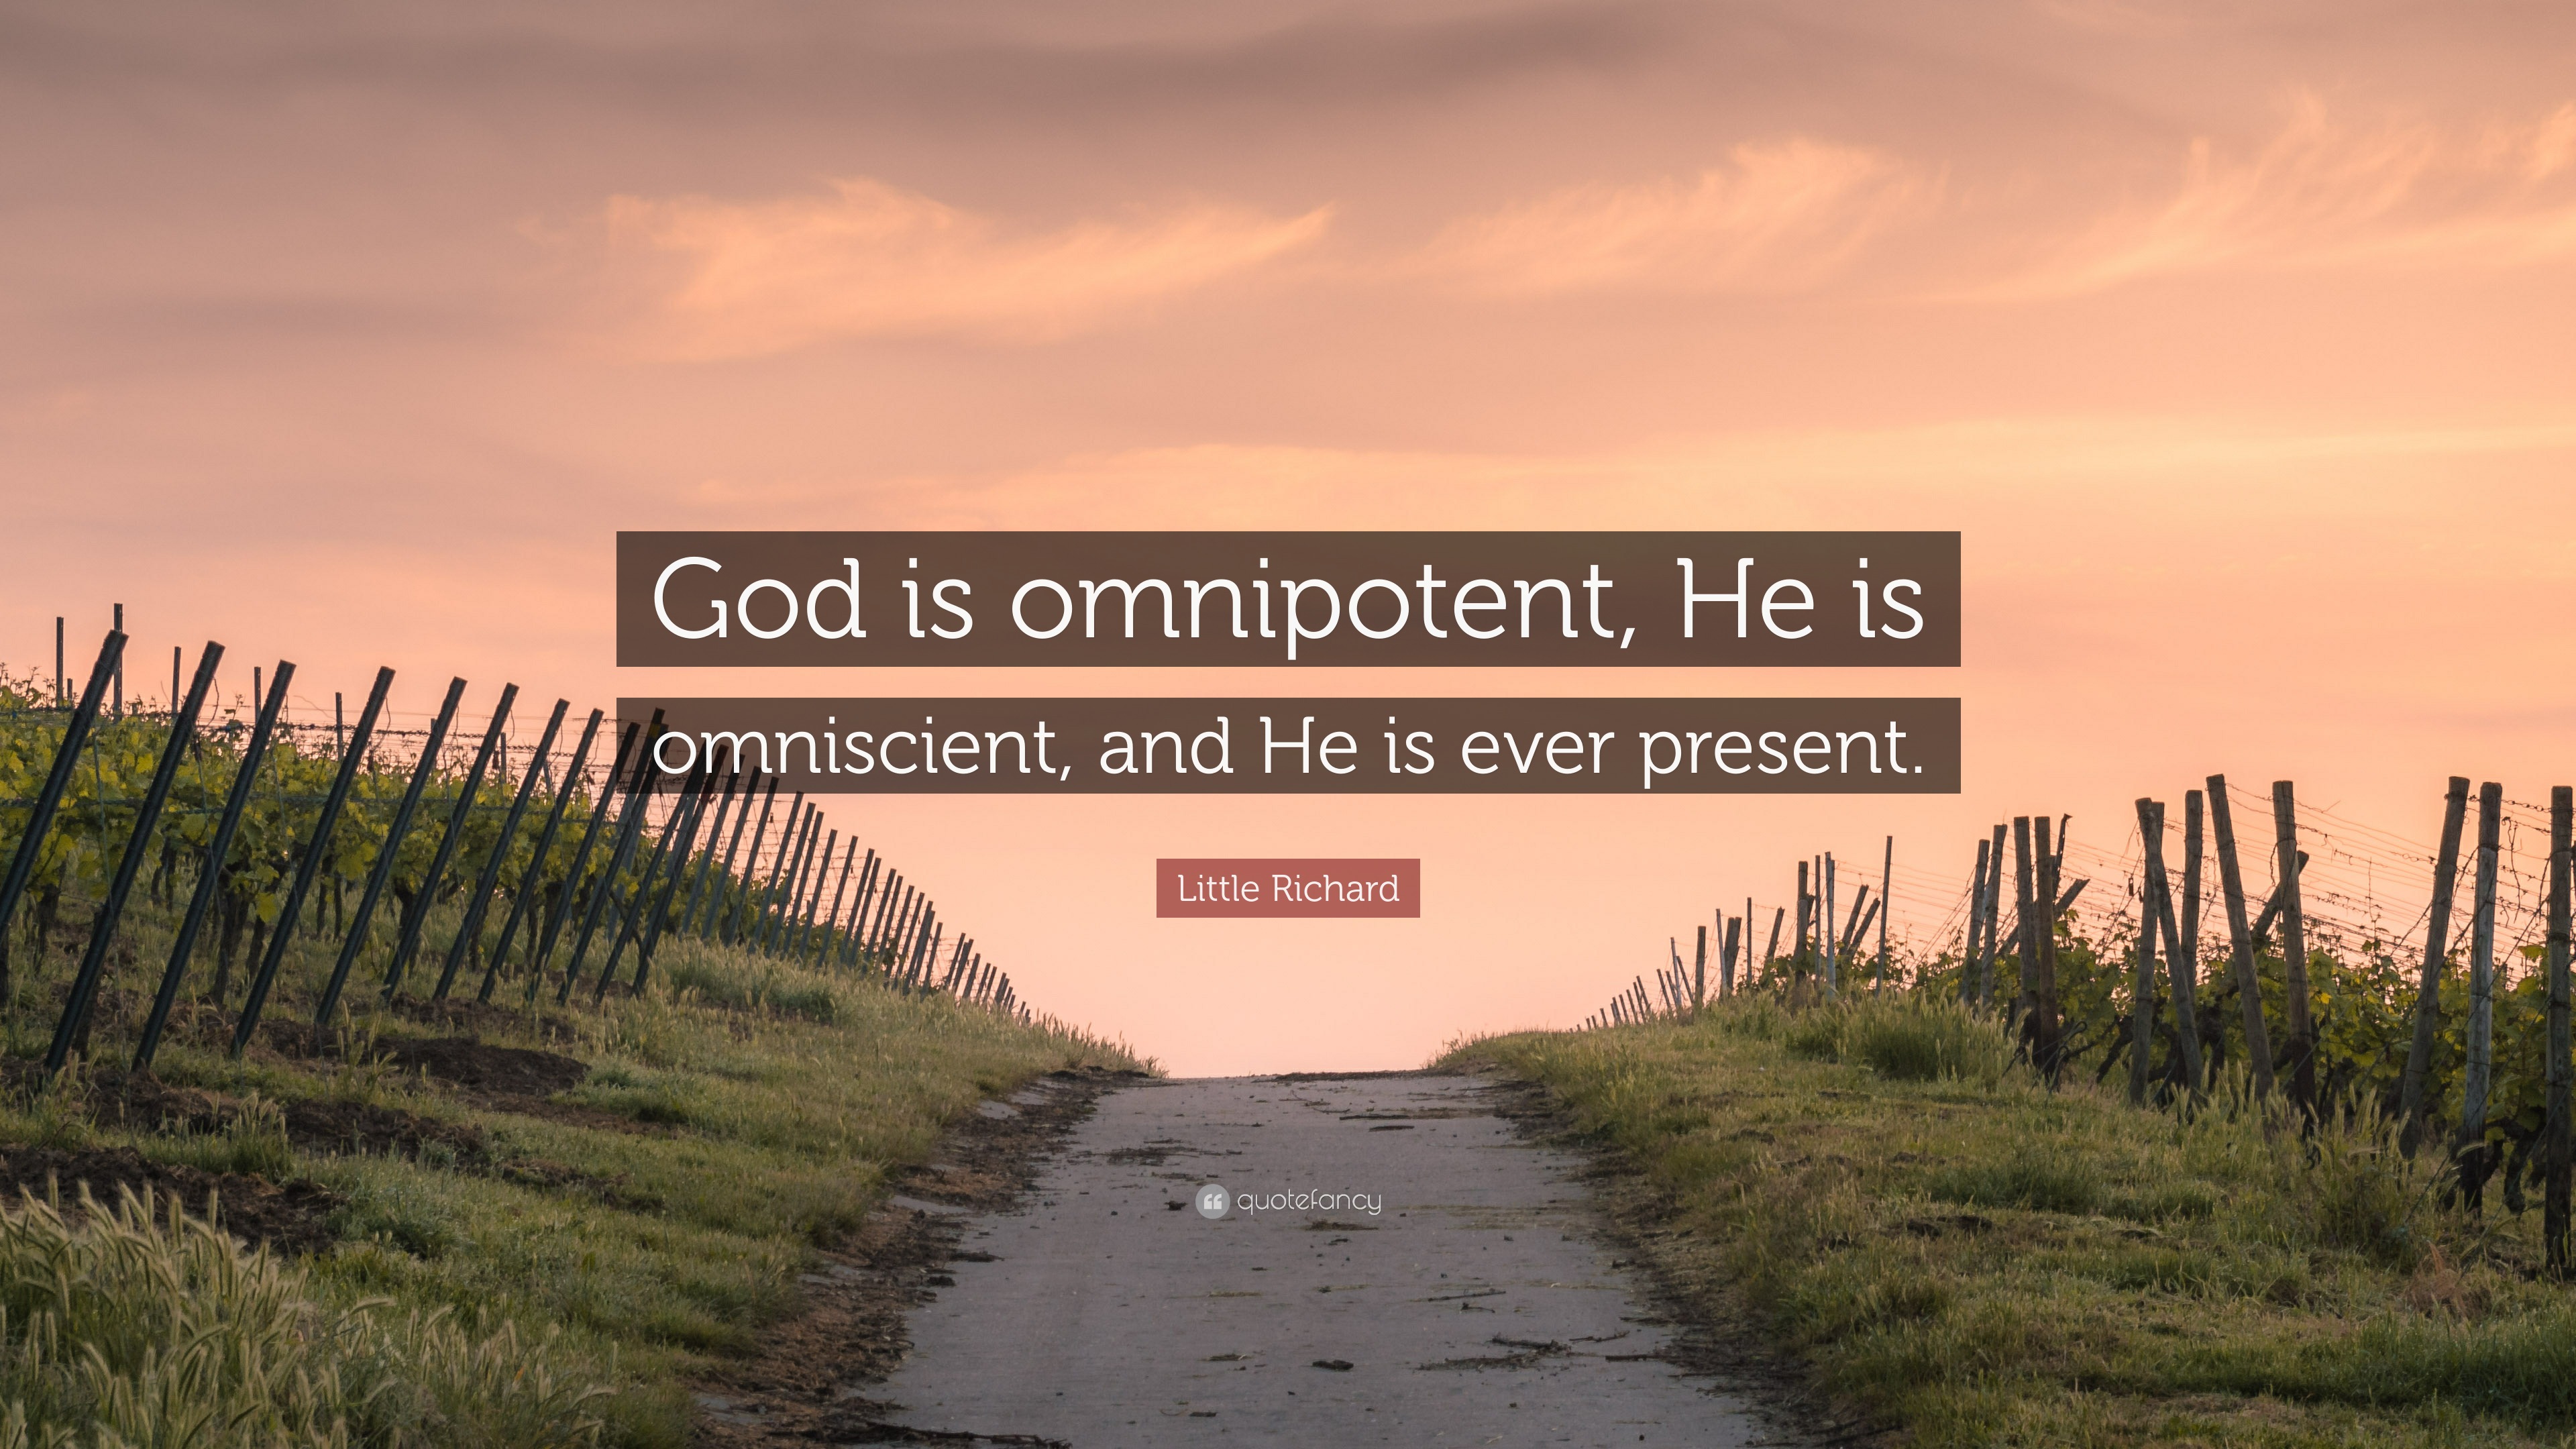 omnipresence of god definition